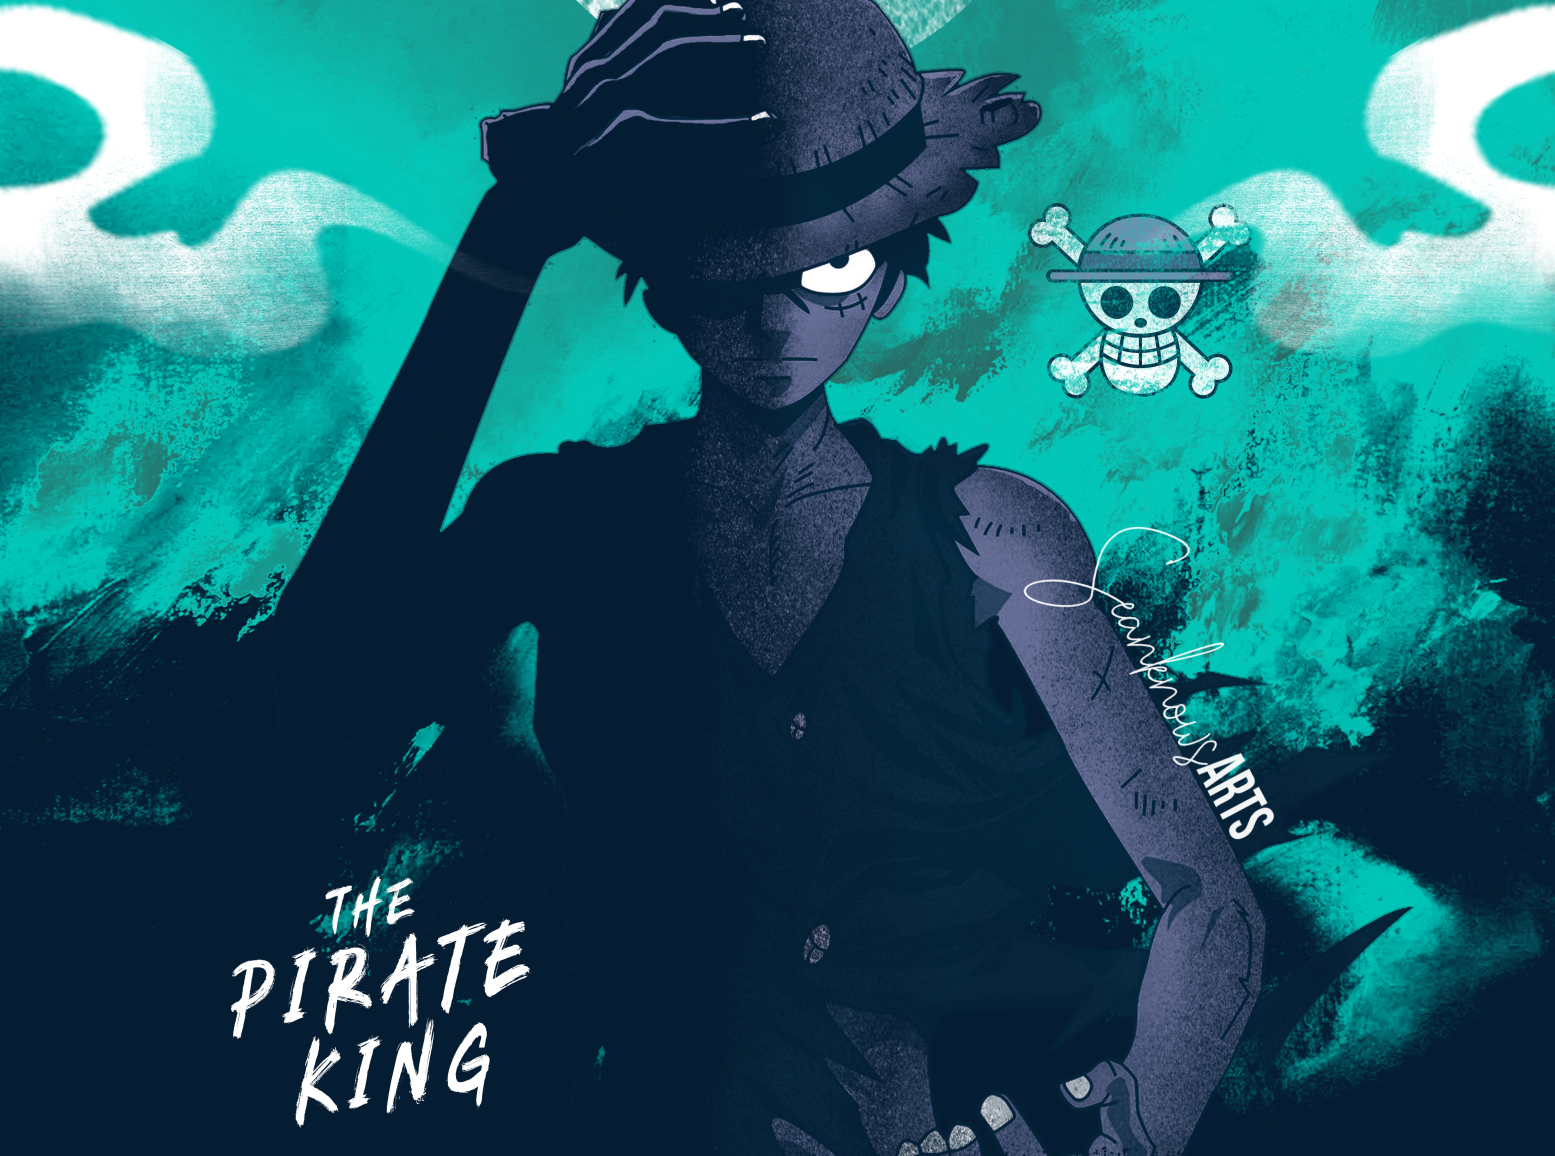 Điều gì khiến One Piece đến vậy đình đám và hấp dẫn? Những người hâm mộ chắc chắn sẽ biết đến Pirate King - người sở hữu kỷ lục chấp tất cả các thử thách trên đại dương. Bạn sẽ thích thú khi xem bức họa The Pirate King do Aeron Sean tạo ra trên Dribbble.